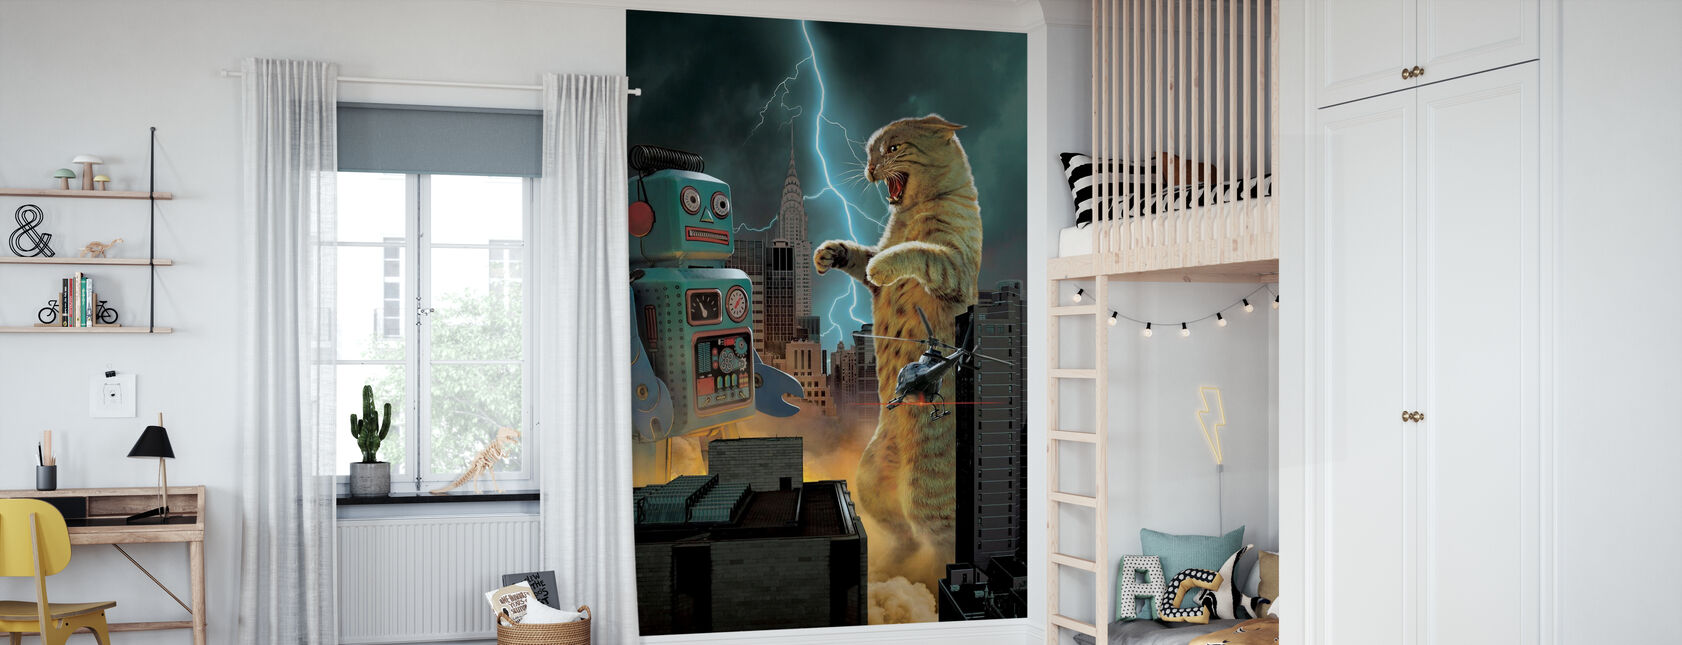 Catzilla vs Robot - Wallpaper - Kids Room